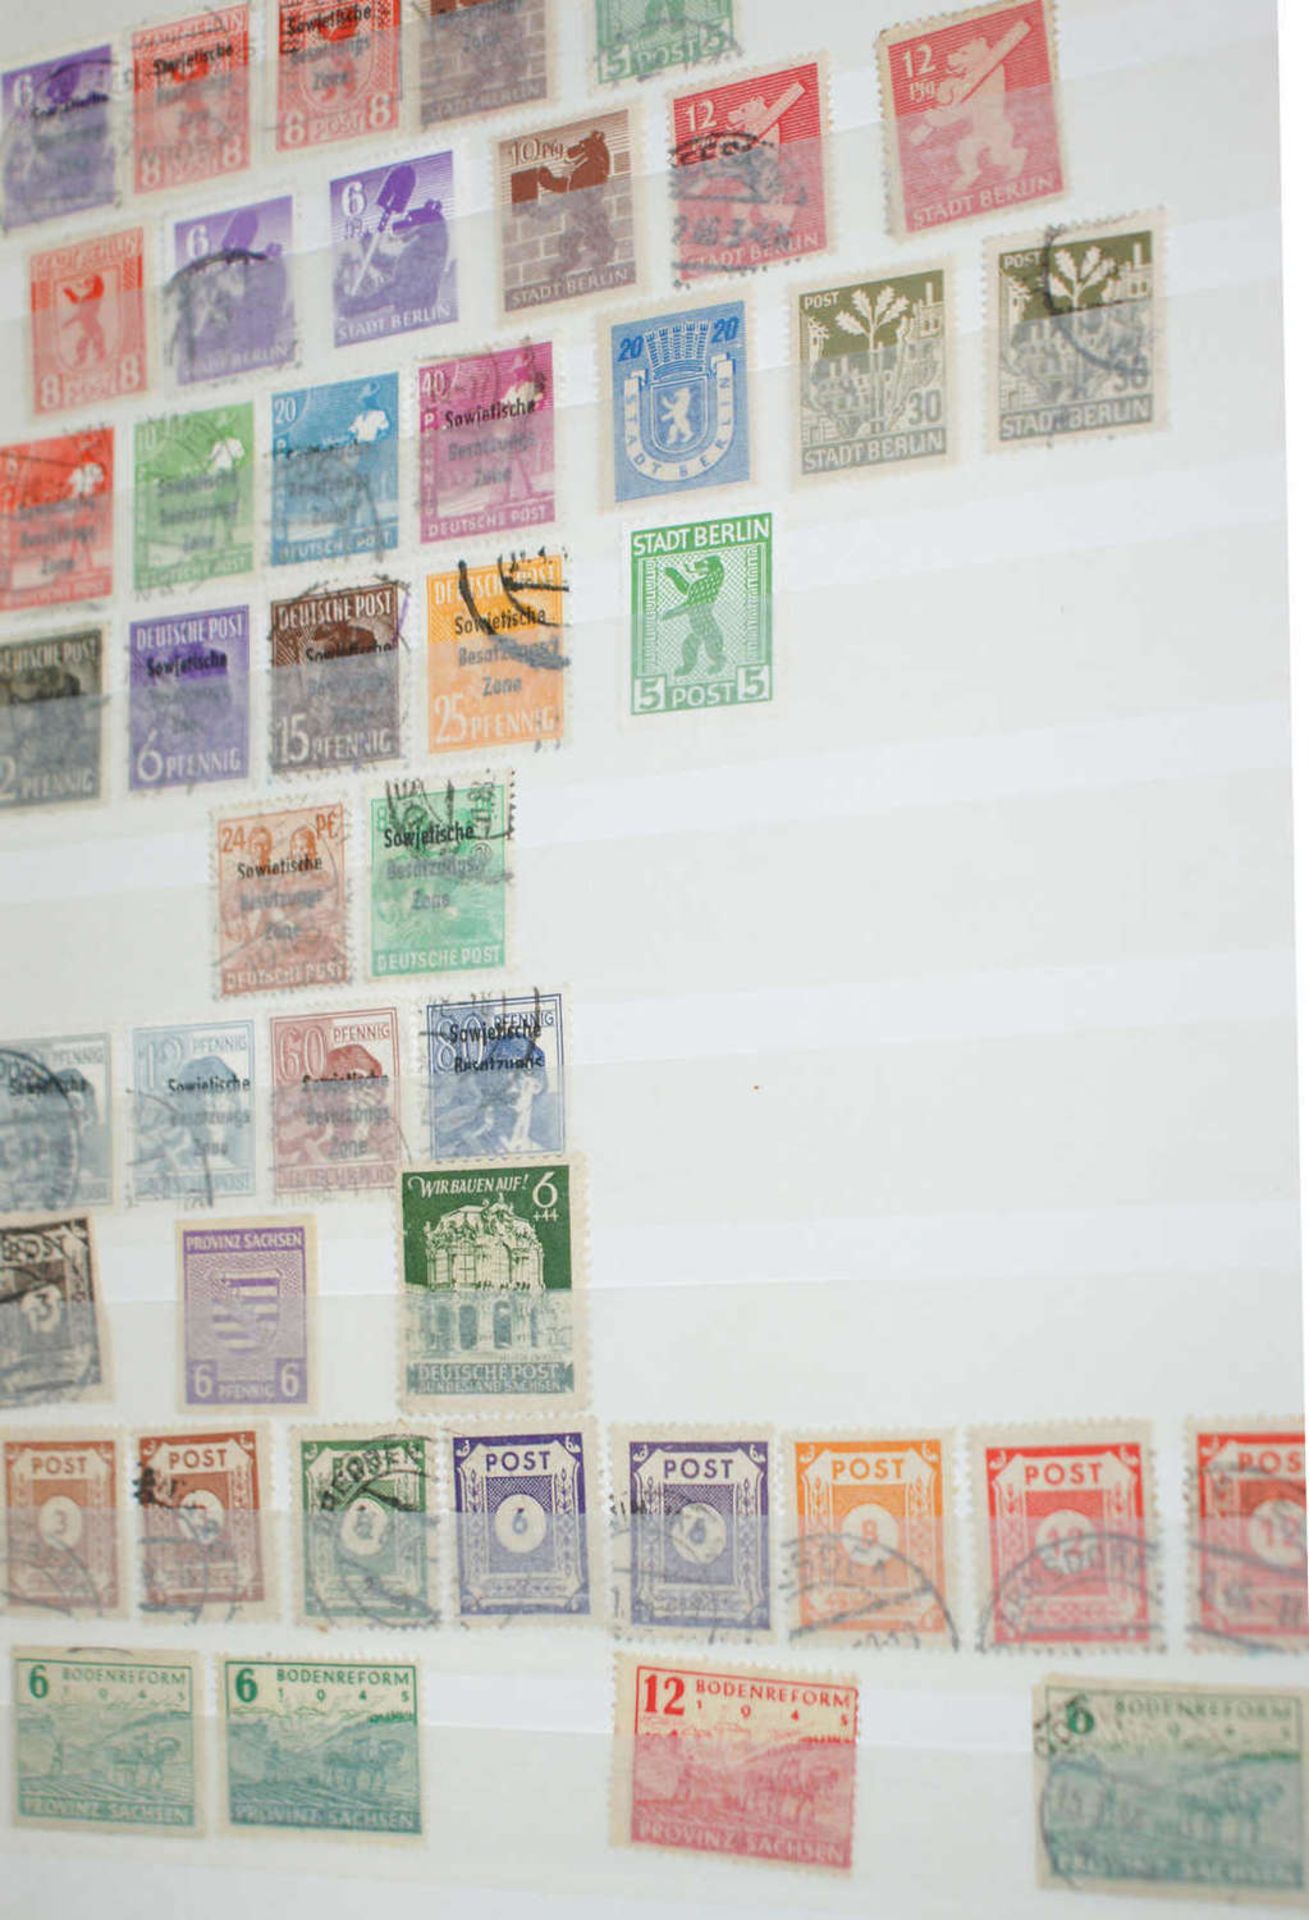 DDR - Briefmarken Dubletten Konvolut, bestehend aus 16 Alben, teilweise schlecht gelagert. - Bild 3 aus 4